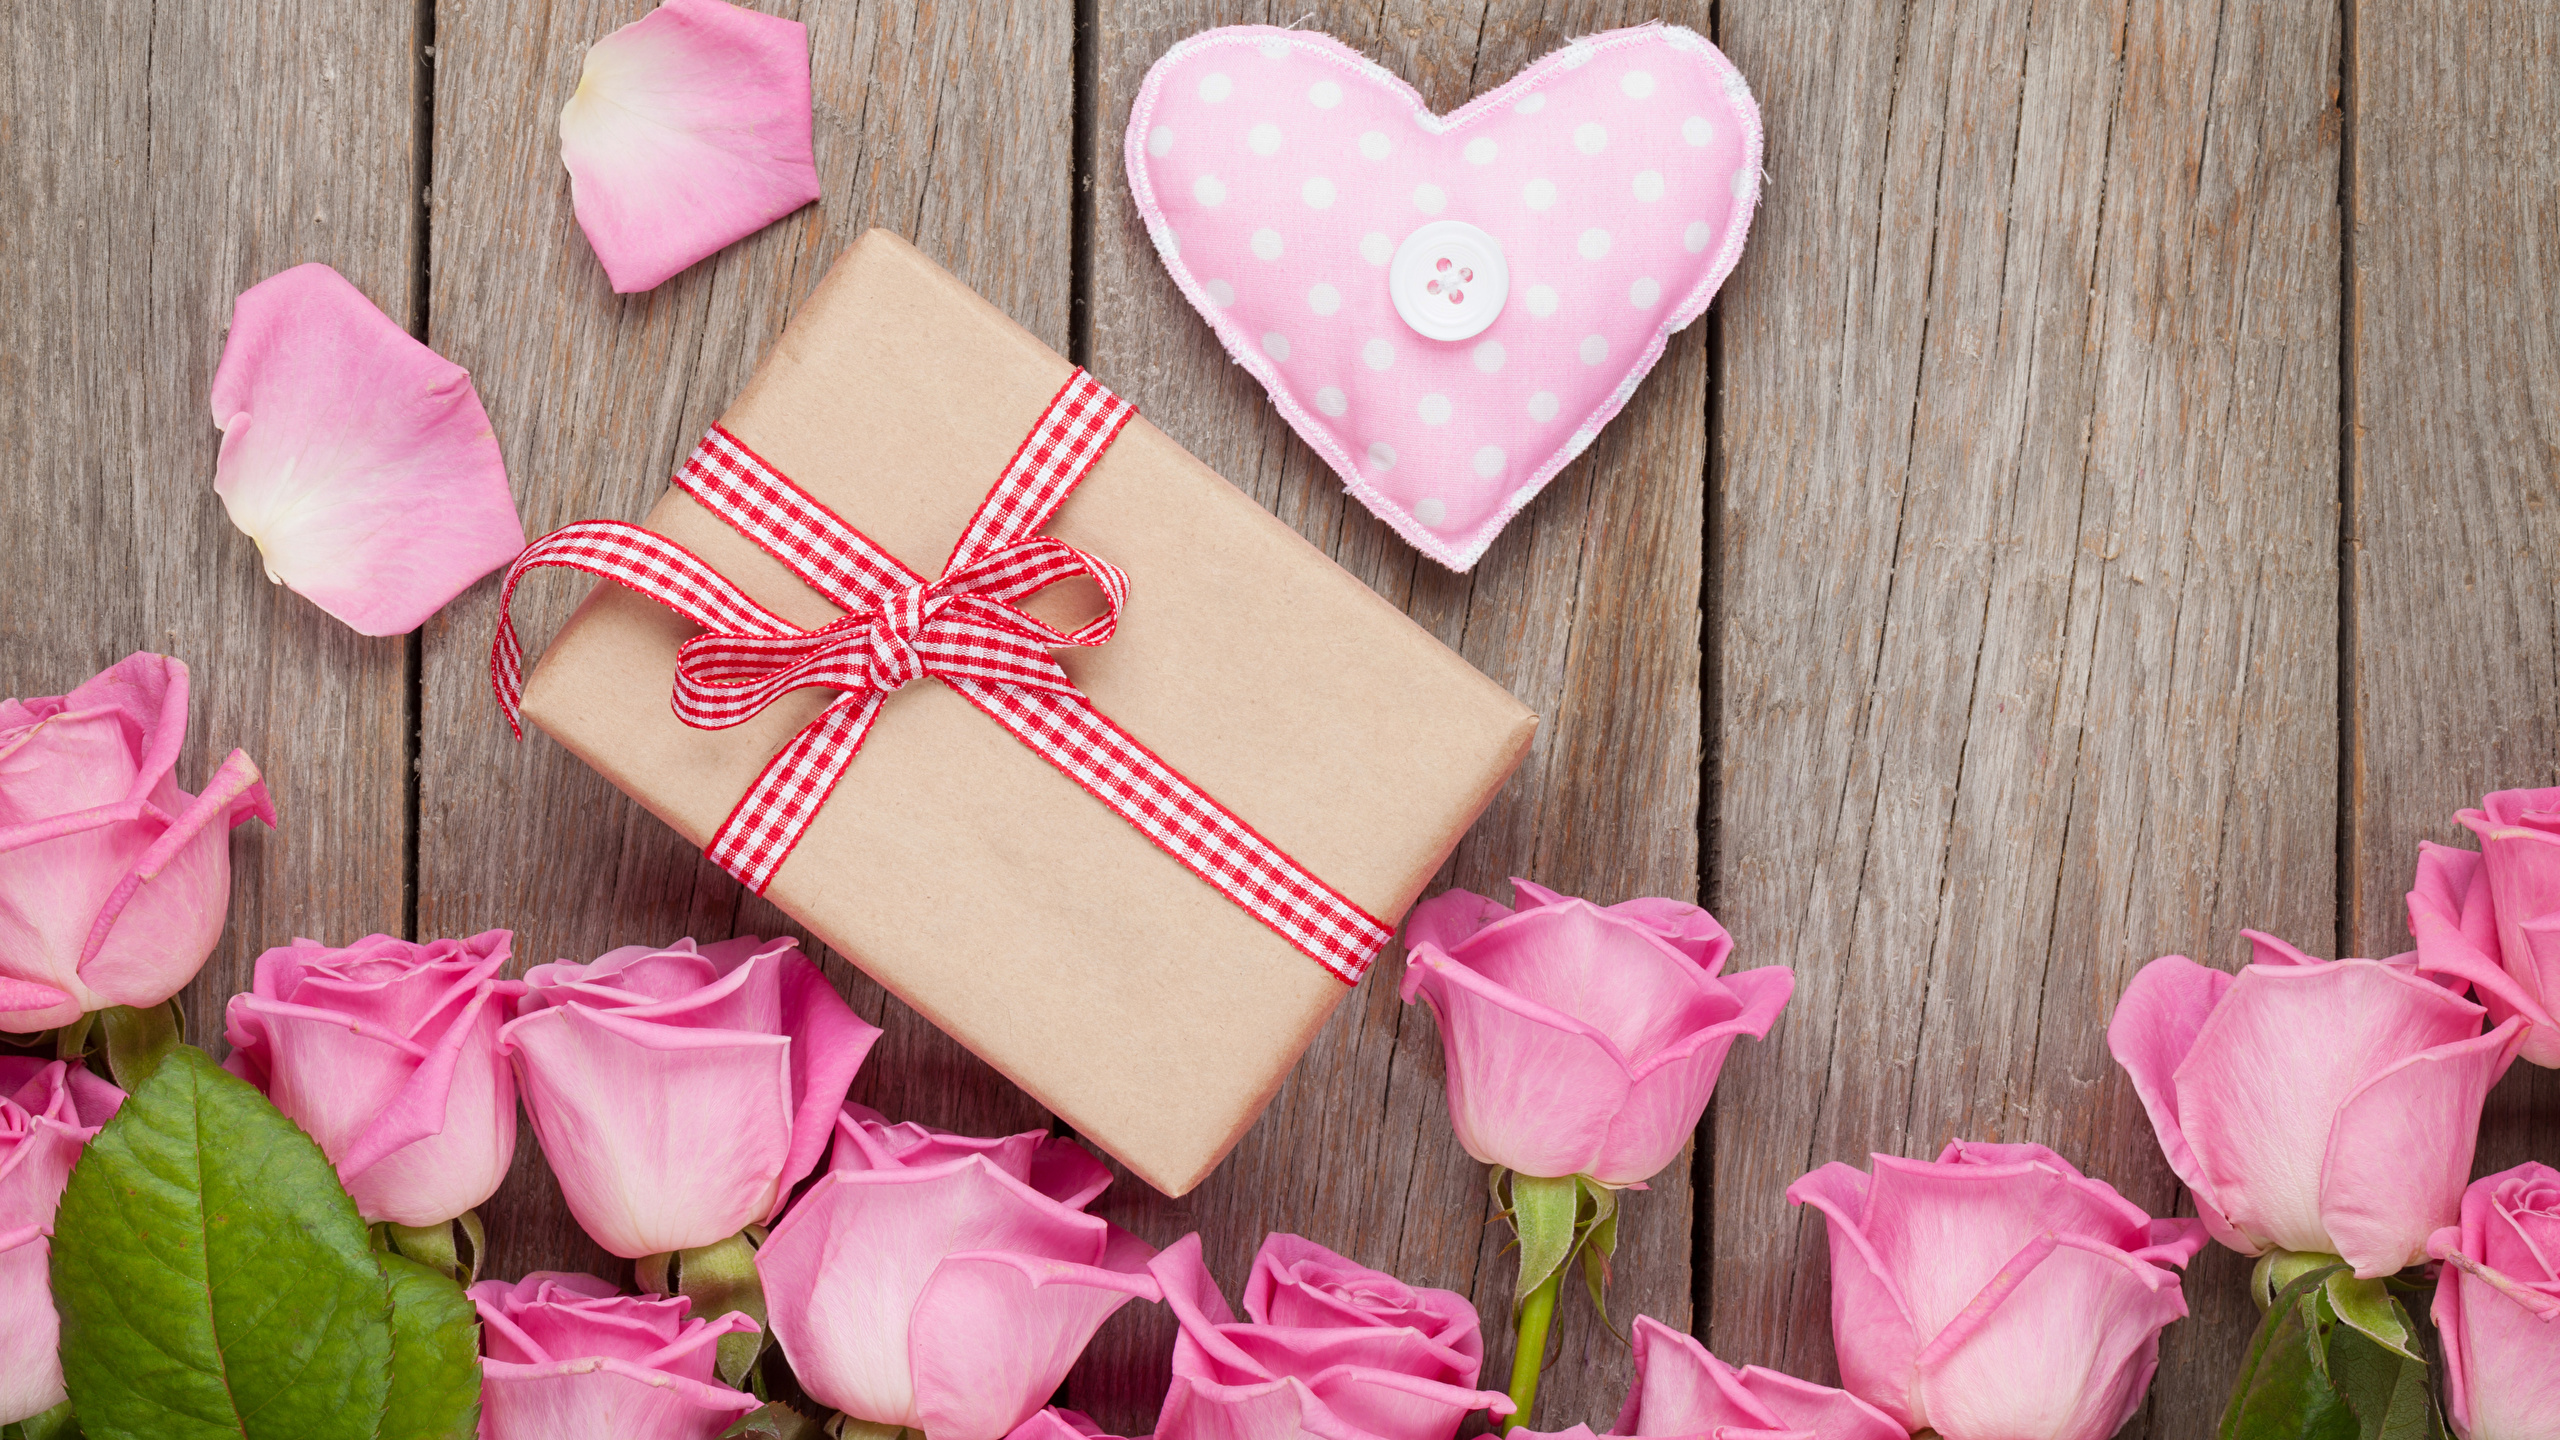 壁紙 2560x1440 バレンタインデー バラ 木の板 ピンク ハート 贈り物 花びら 花 ダウンロード 写真